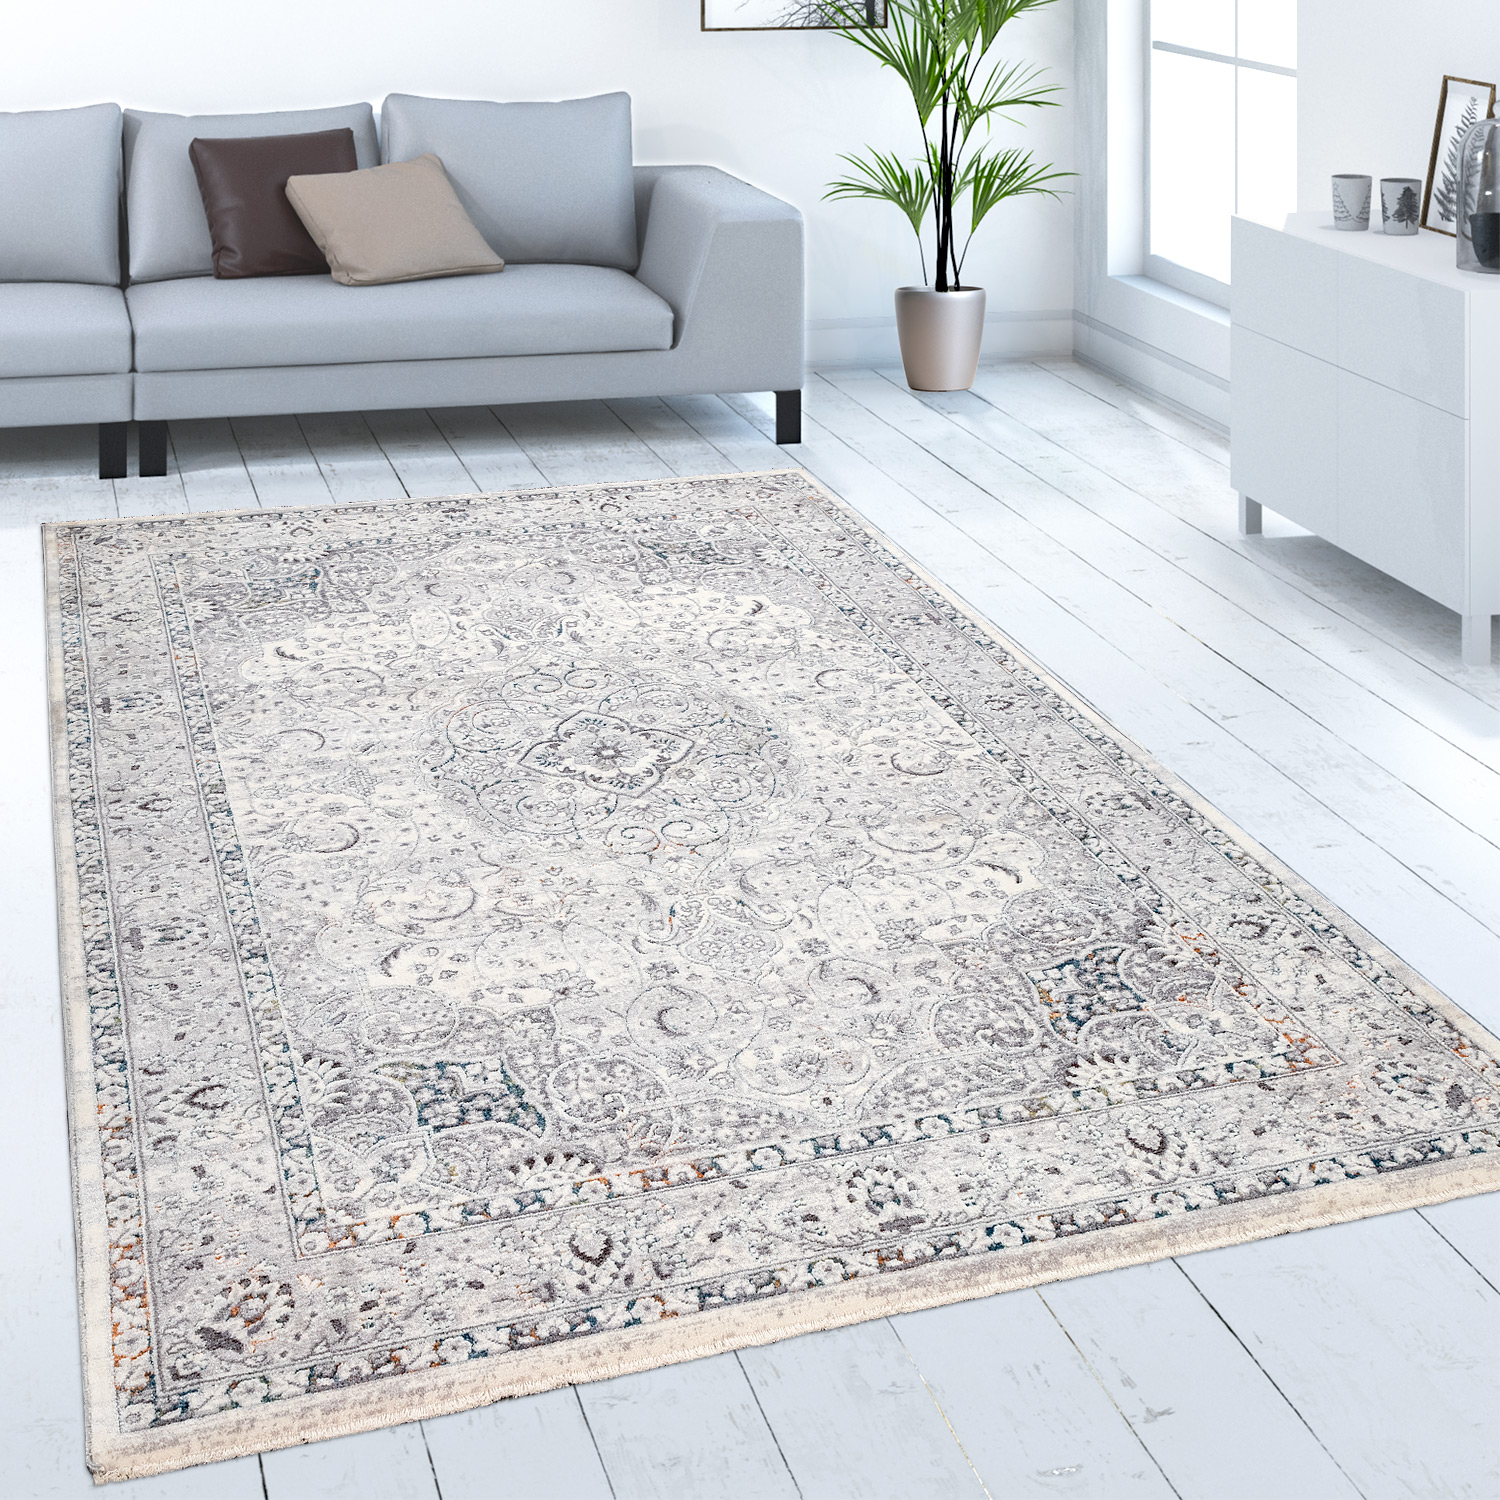 Teppich Wohnzimmer Orientalisches Muster Bordüre Beige 